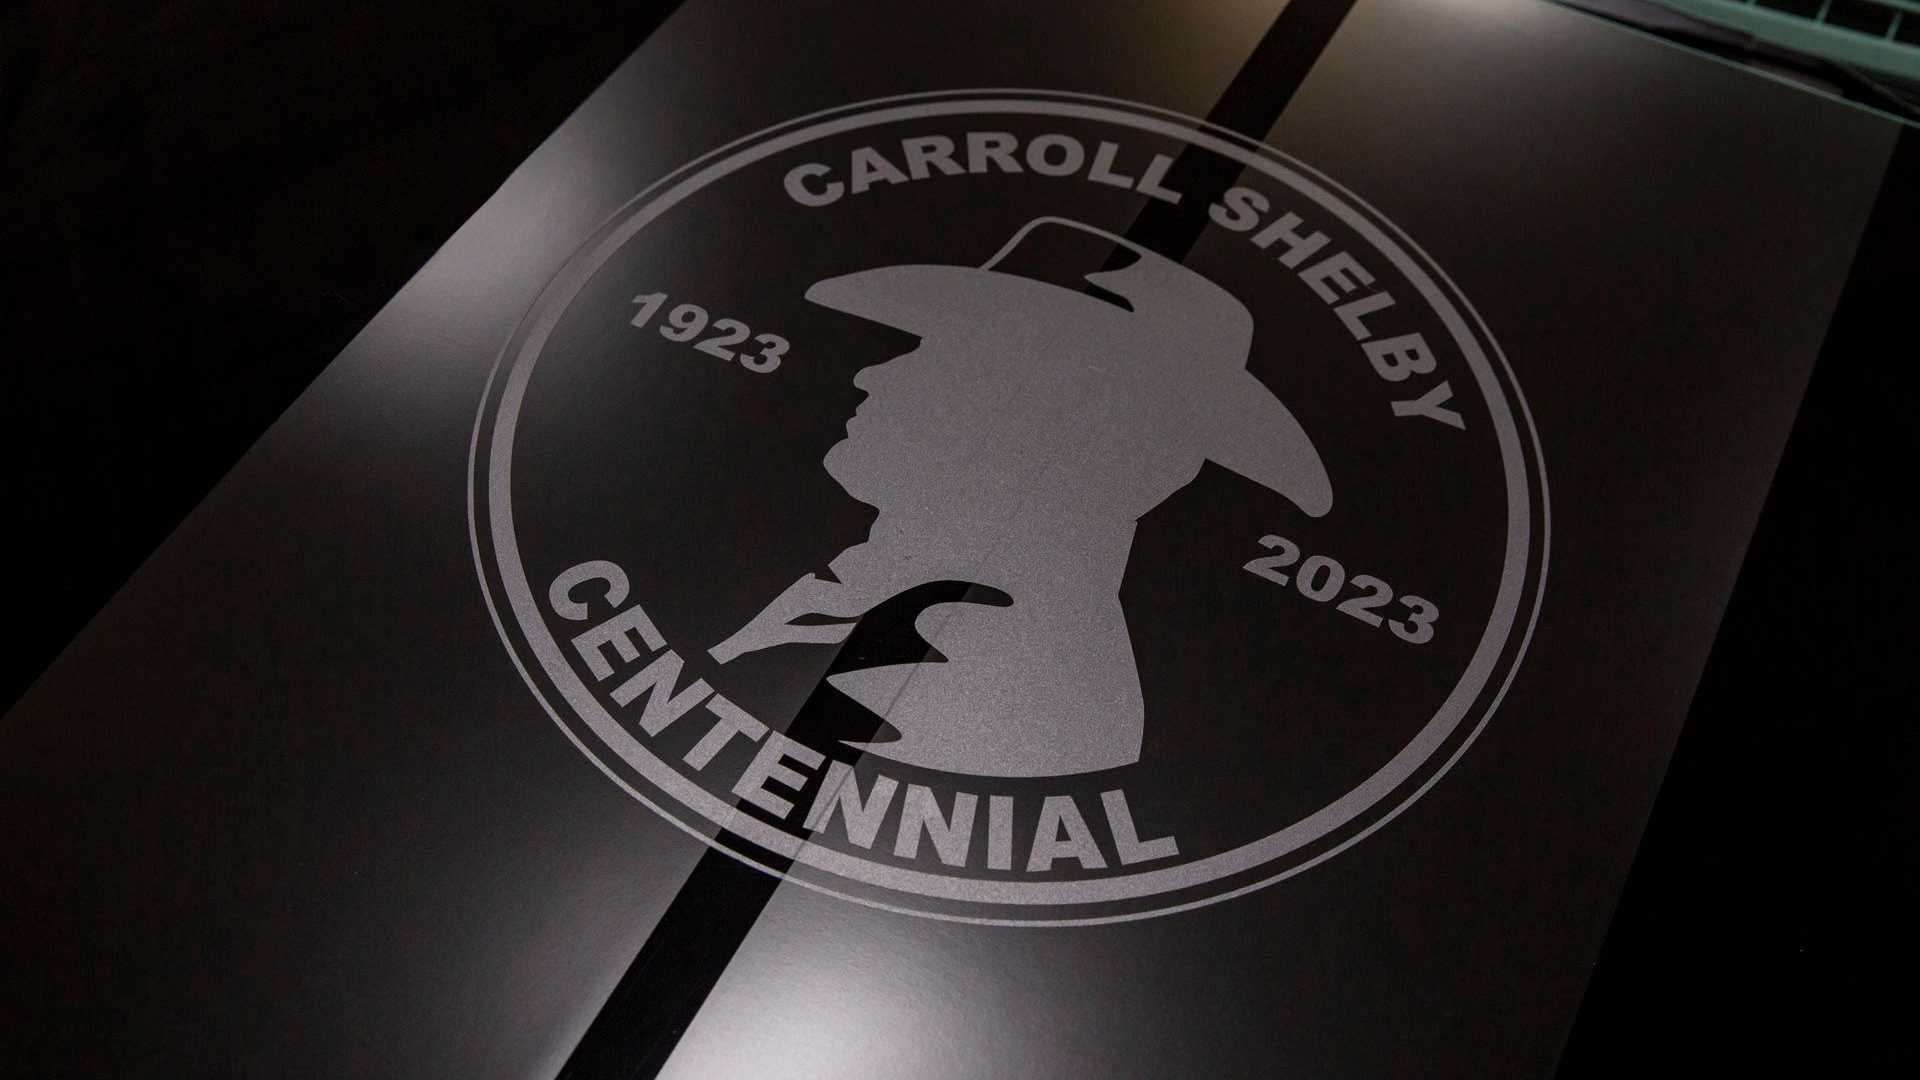 Carroll-Shelby-Centennial-Edition-Mustang-GT-2023-2